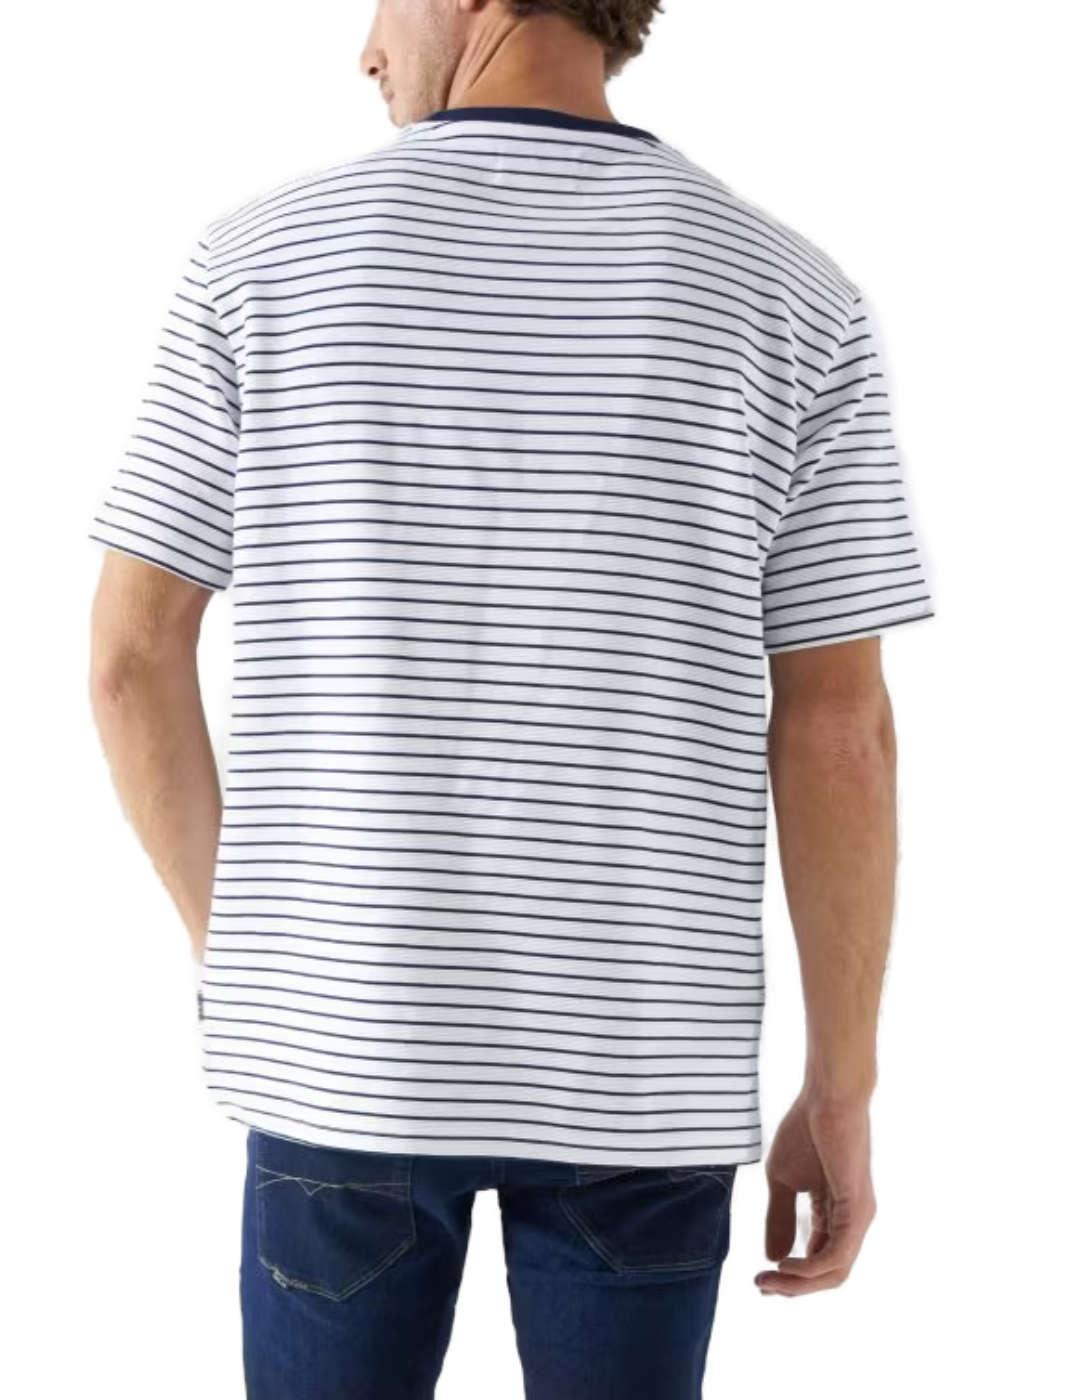 Camiseta Salsa rayas blanca textura con rayas de hombre